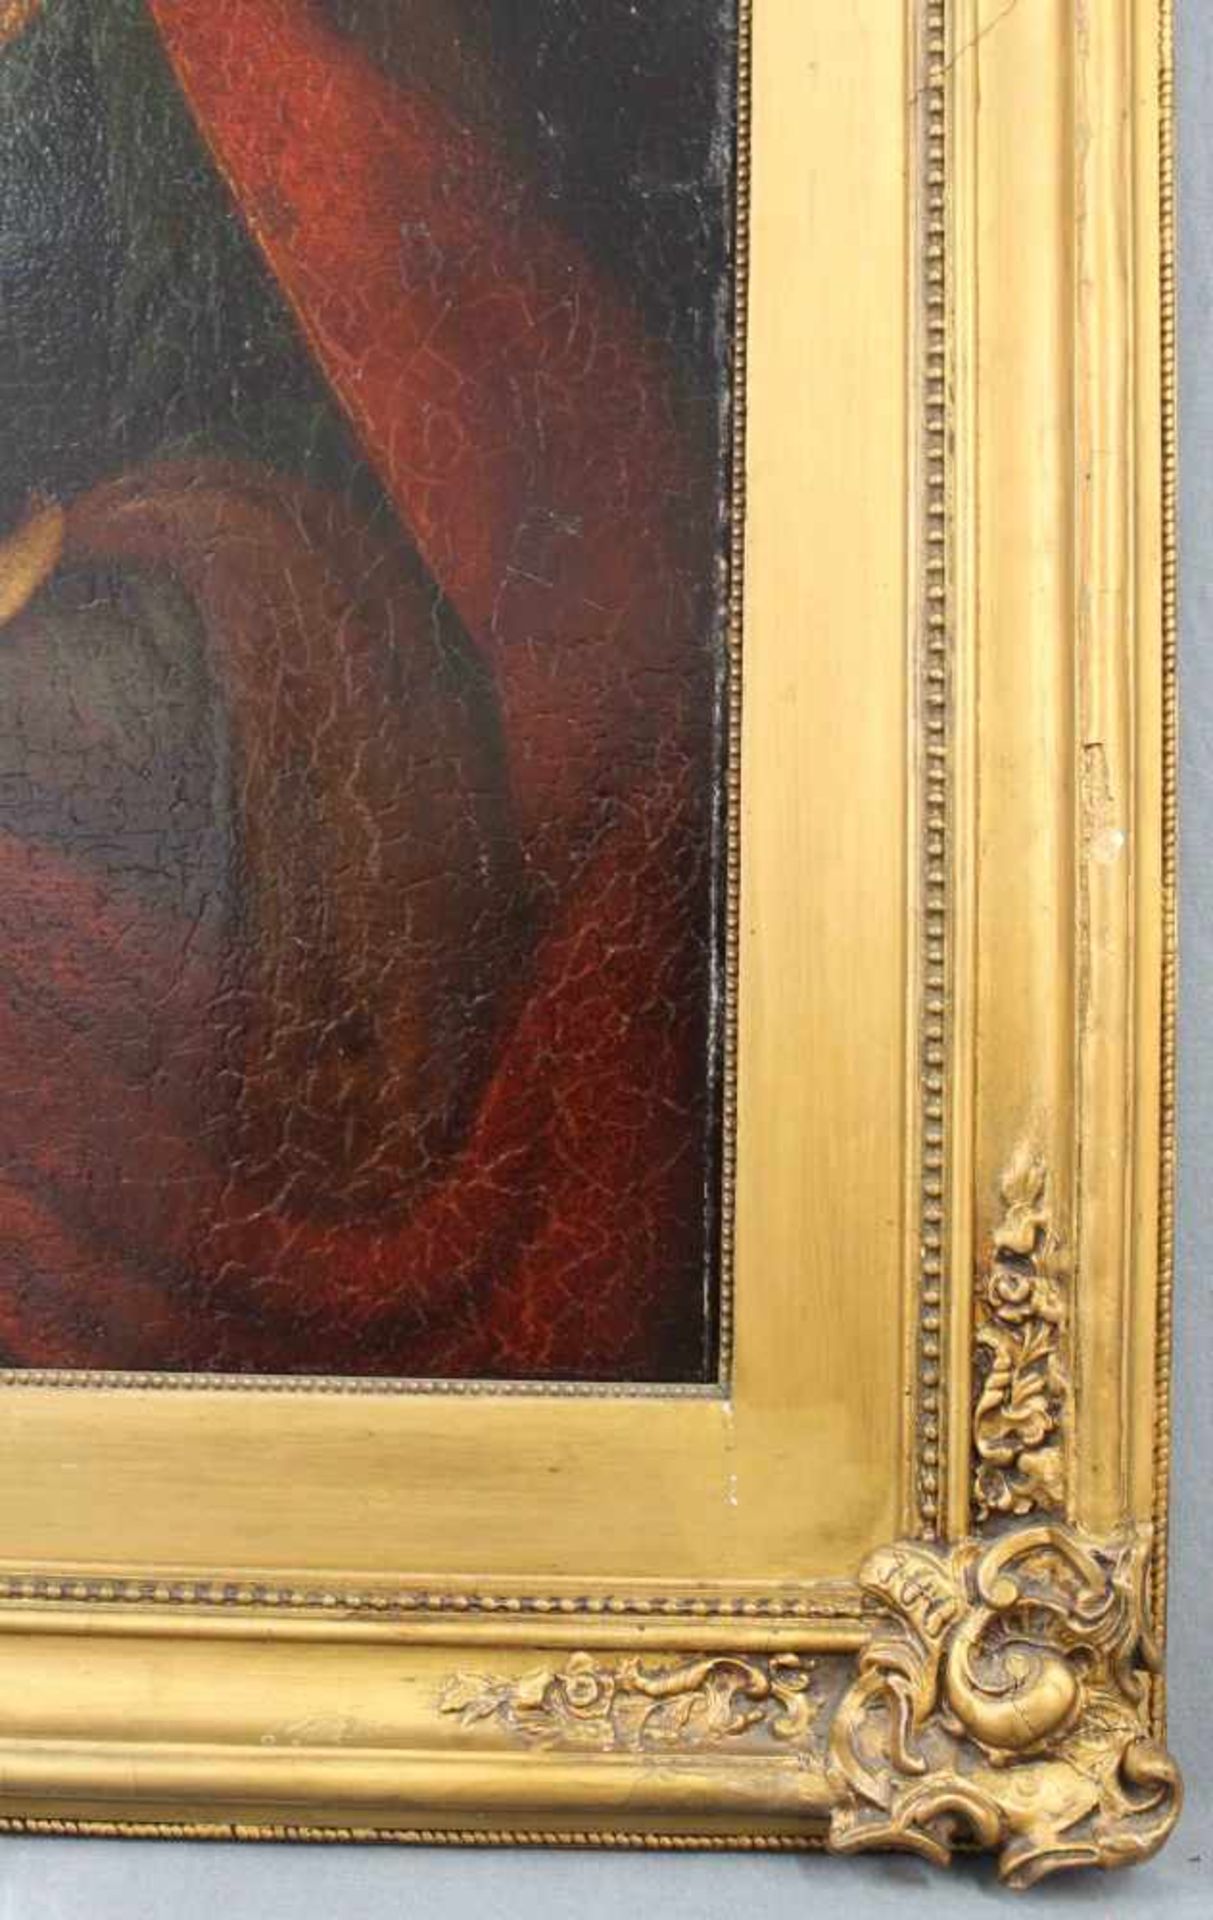 UNSIGNIERT (XVIII). Maria mit Jesus.66 cm x 54 cm. Öl auf Leinwand, u. a. doubliert. Keine - Bild 6 aus 7